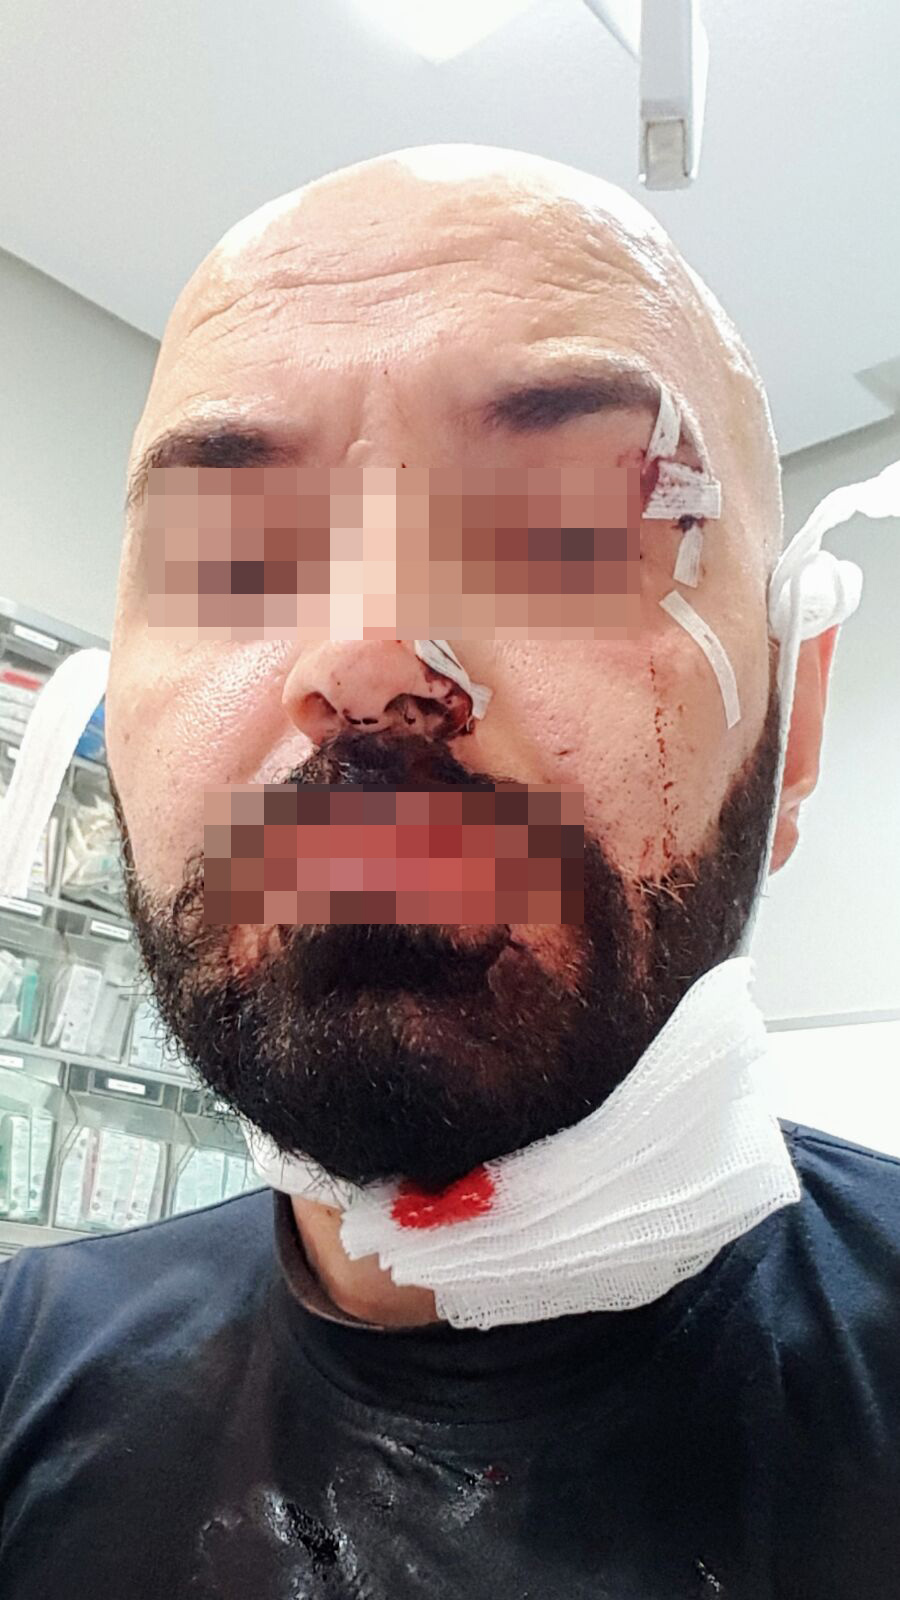 Jorge, con múltiples lesiones en la cara provocadas por el vaso que el agresor le rompió en la cara